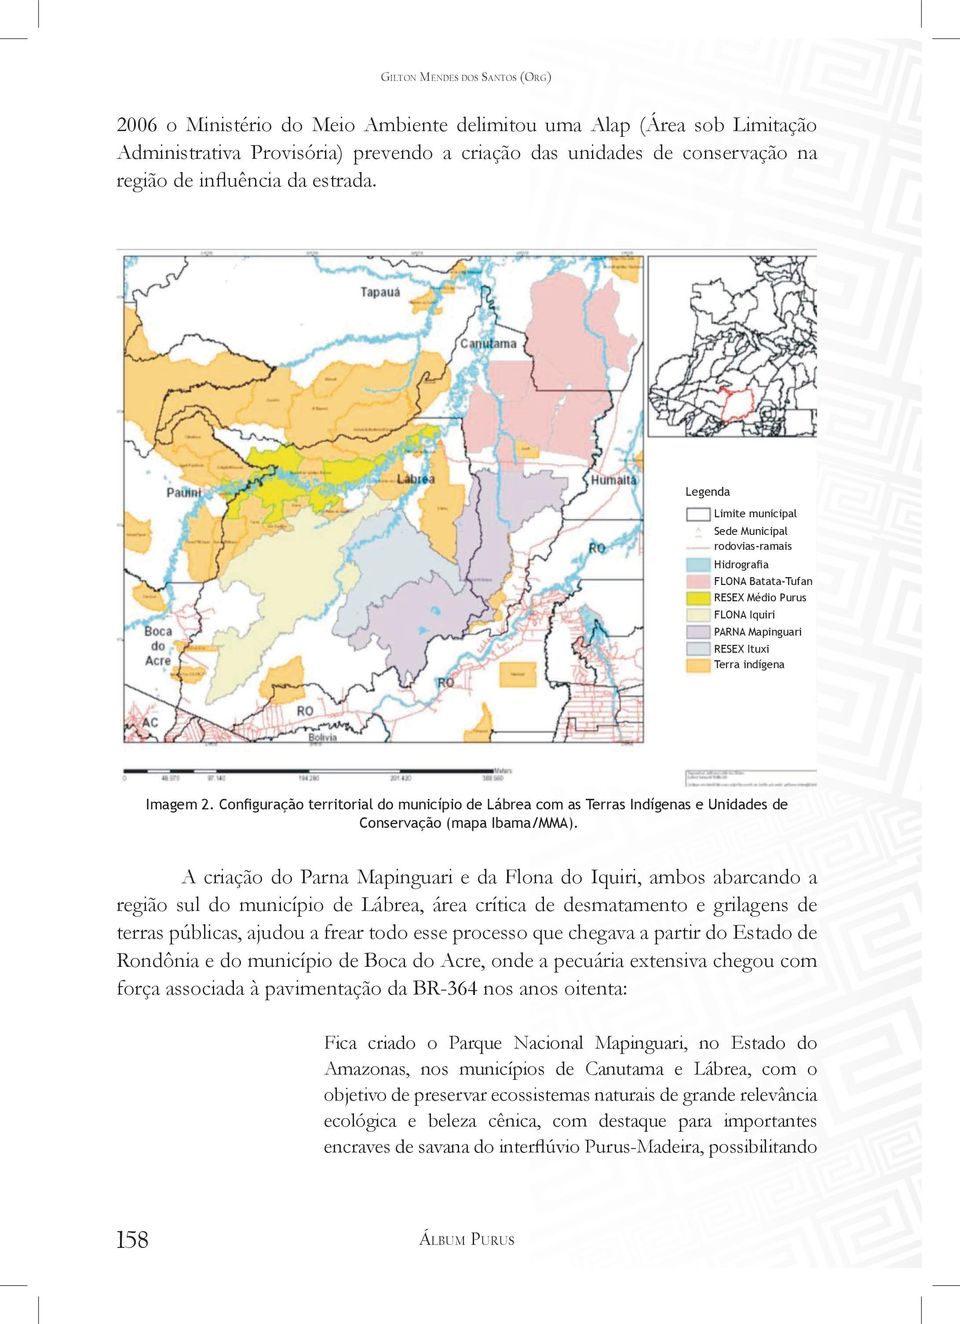 Configuração territorial do município de Lábrea com as Terras Indígenas e Unidades de Conservação (mapa IBAMA/MMA). Imagem 2.